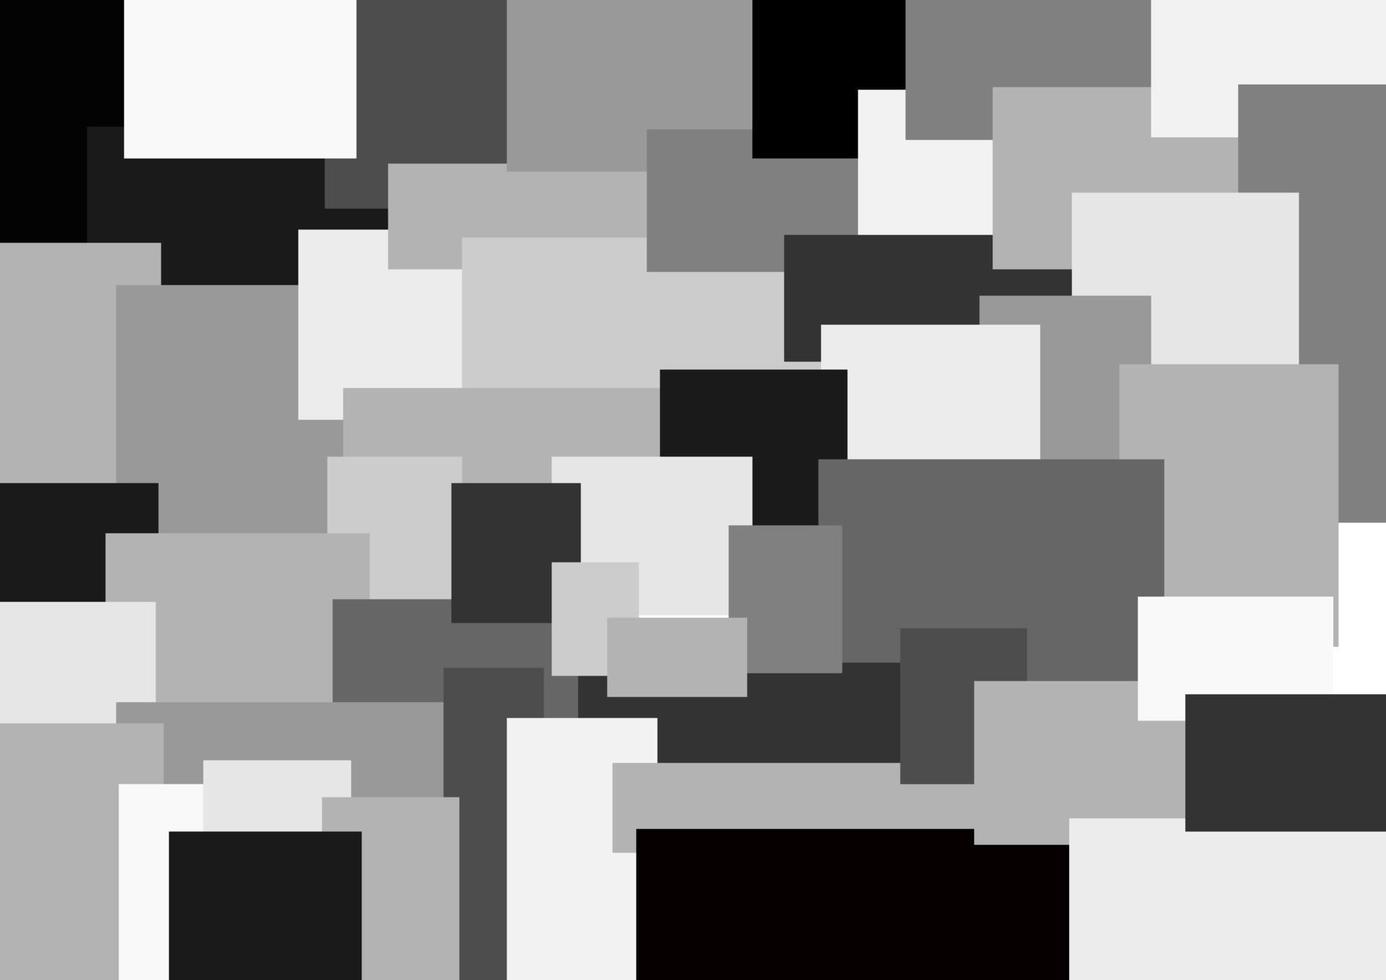 abstrait vector noir et blanc. pile de carrés noirs et blancs.